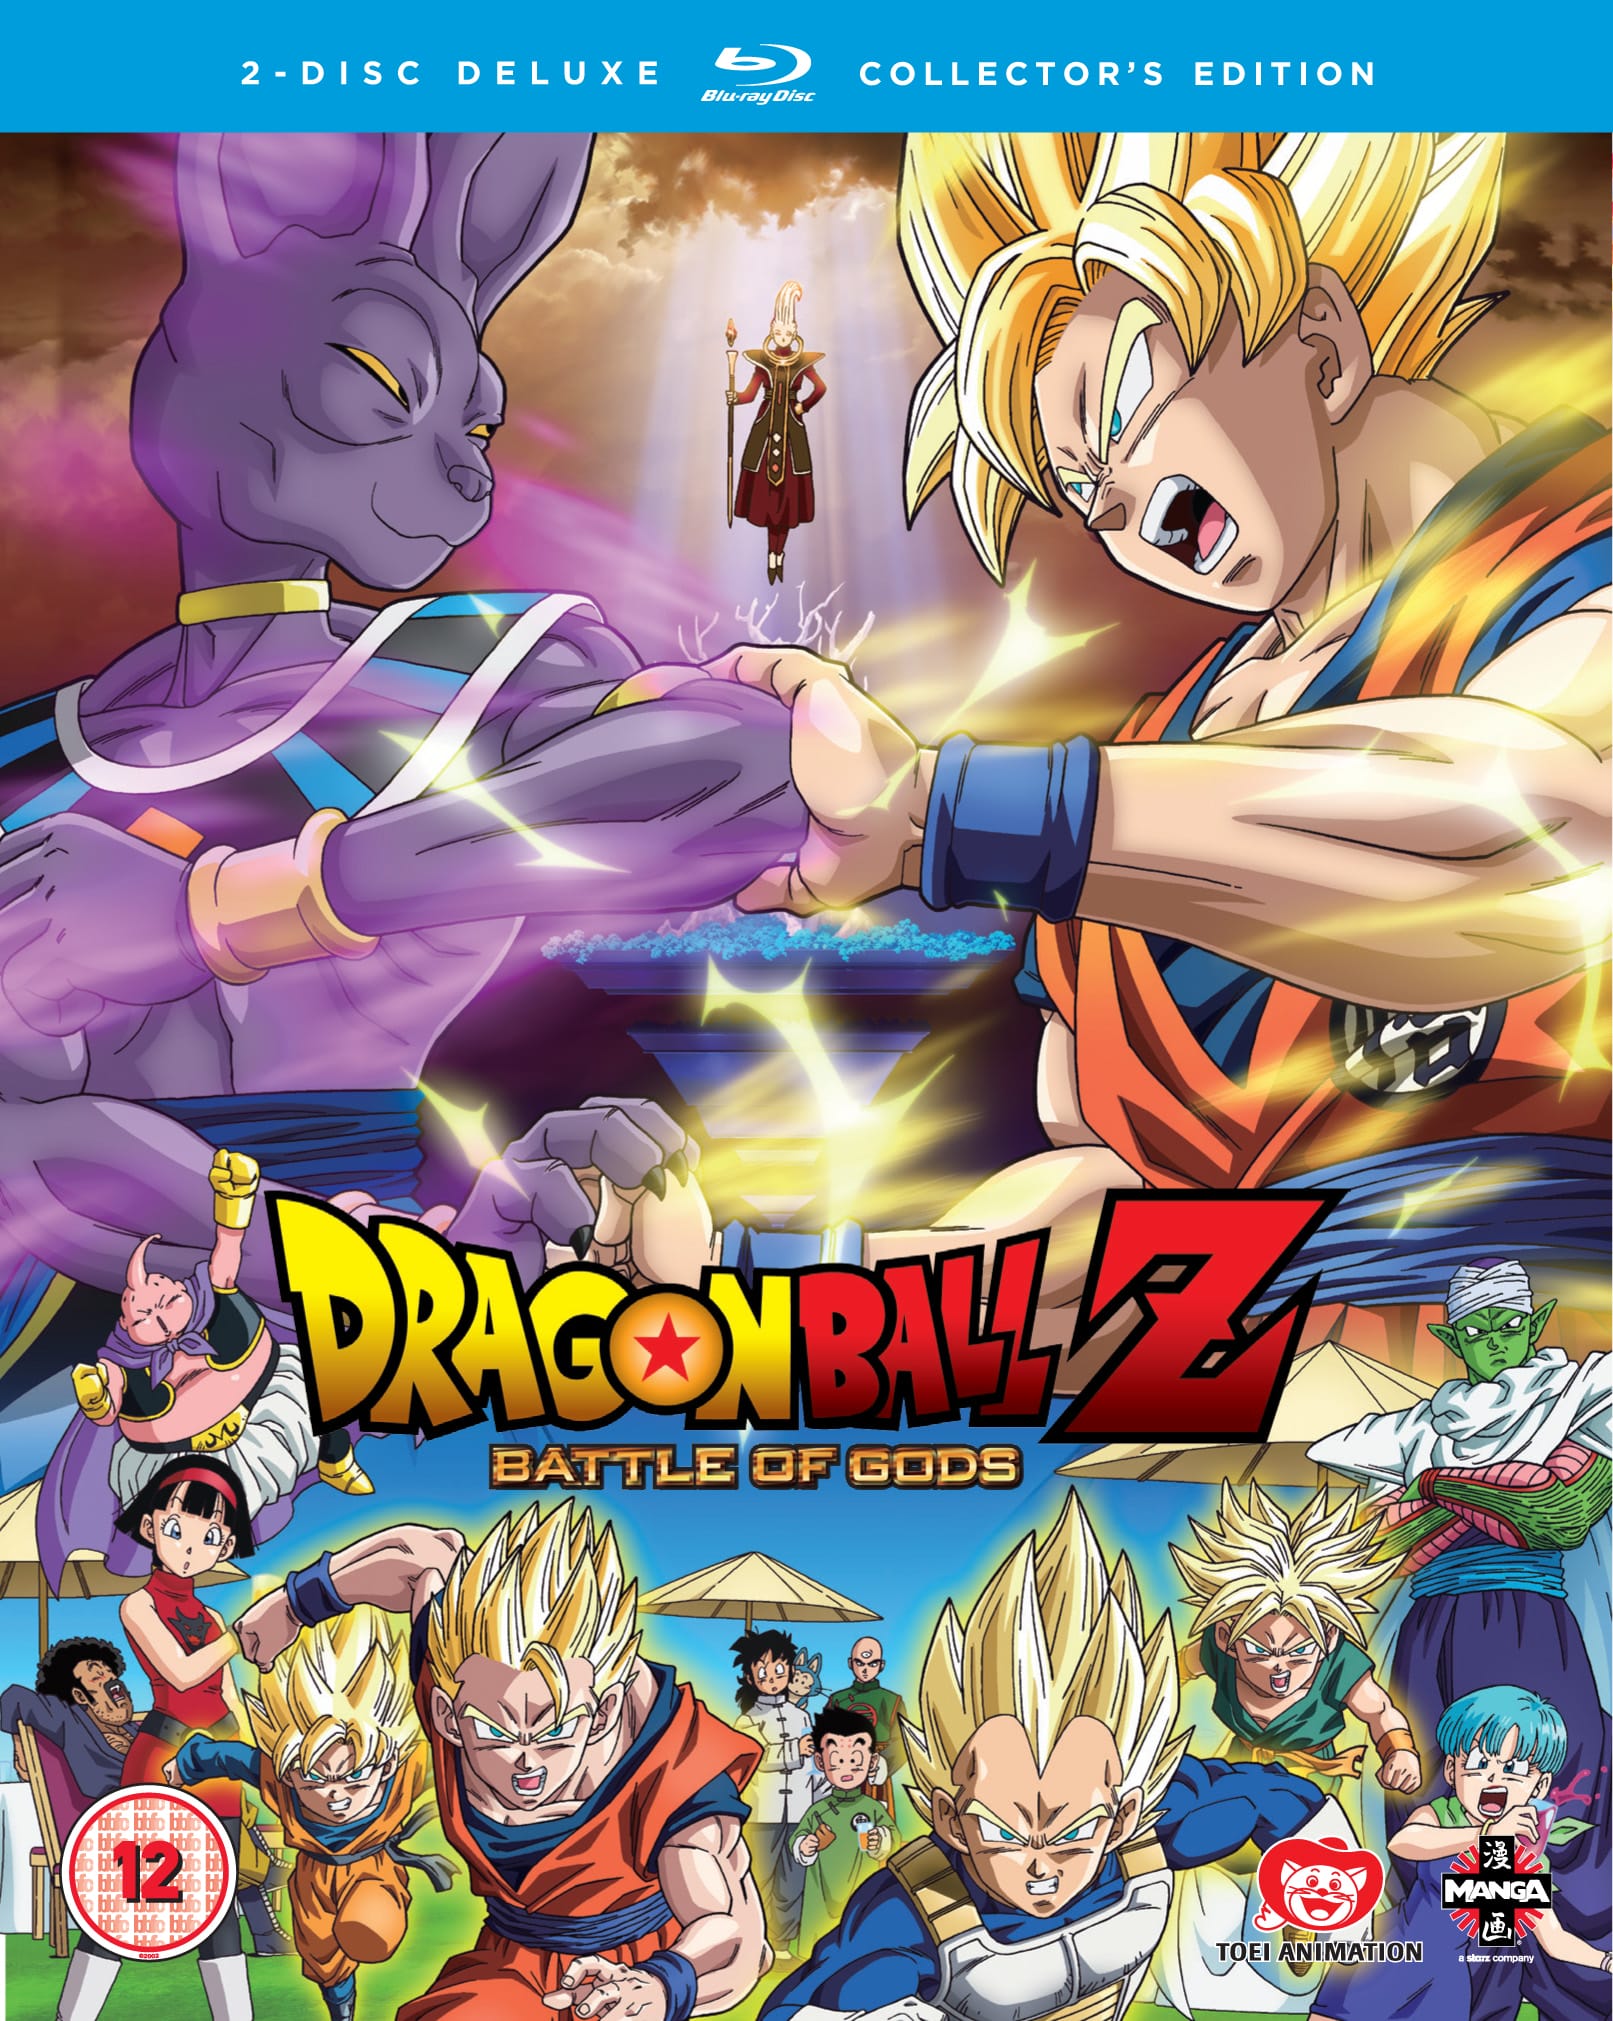 dragon ball z battle of gods full movie downloads